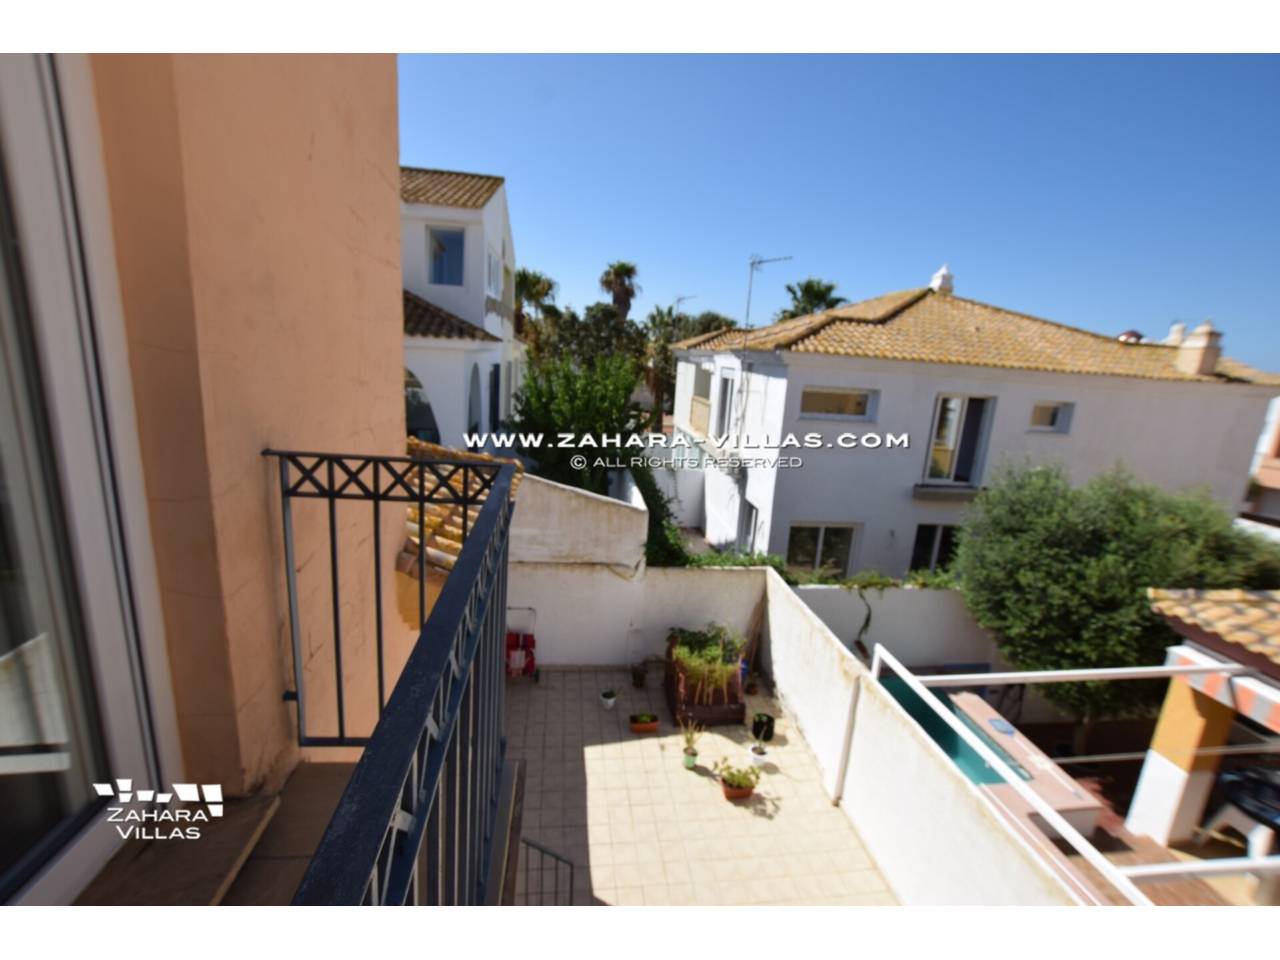 Imagen 13 de Semi-detached house for sale in Zahara de los Atunes, Costa de la Luz